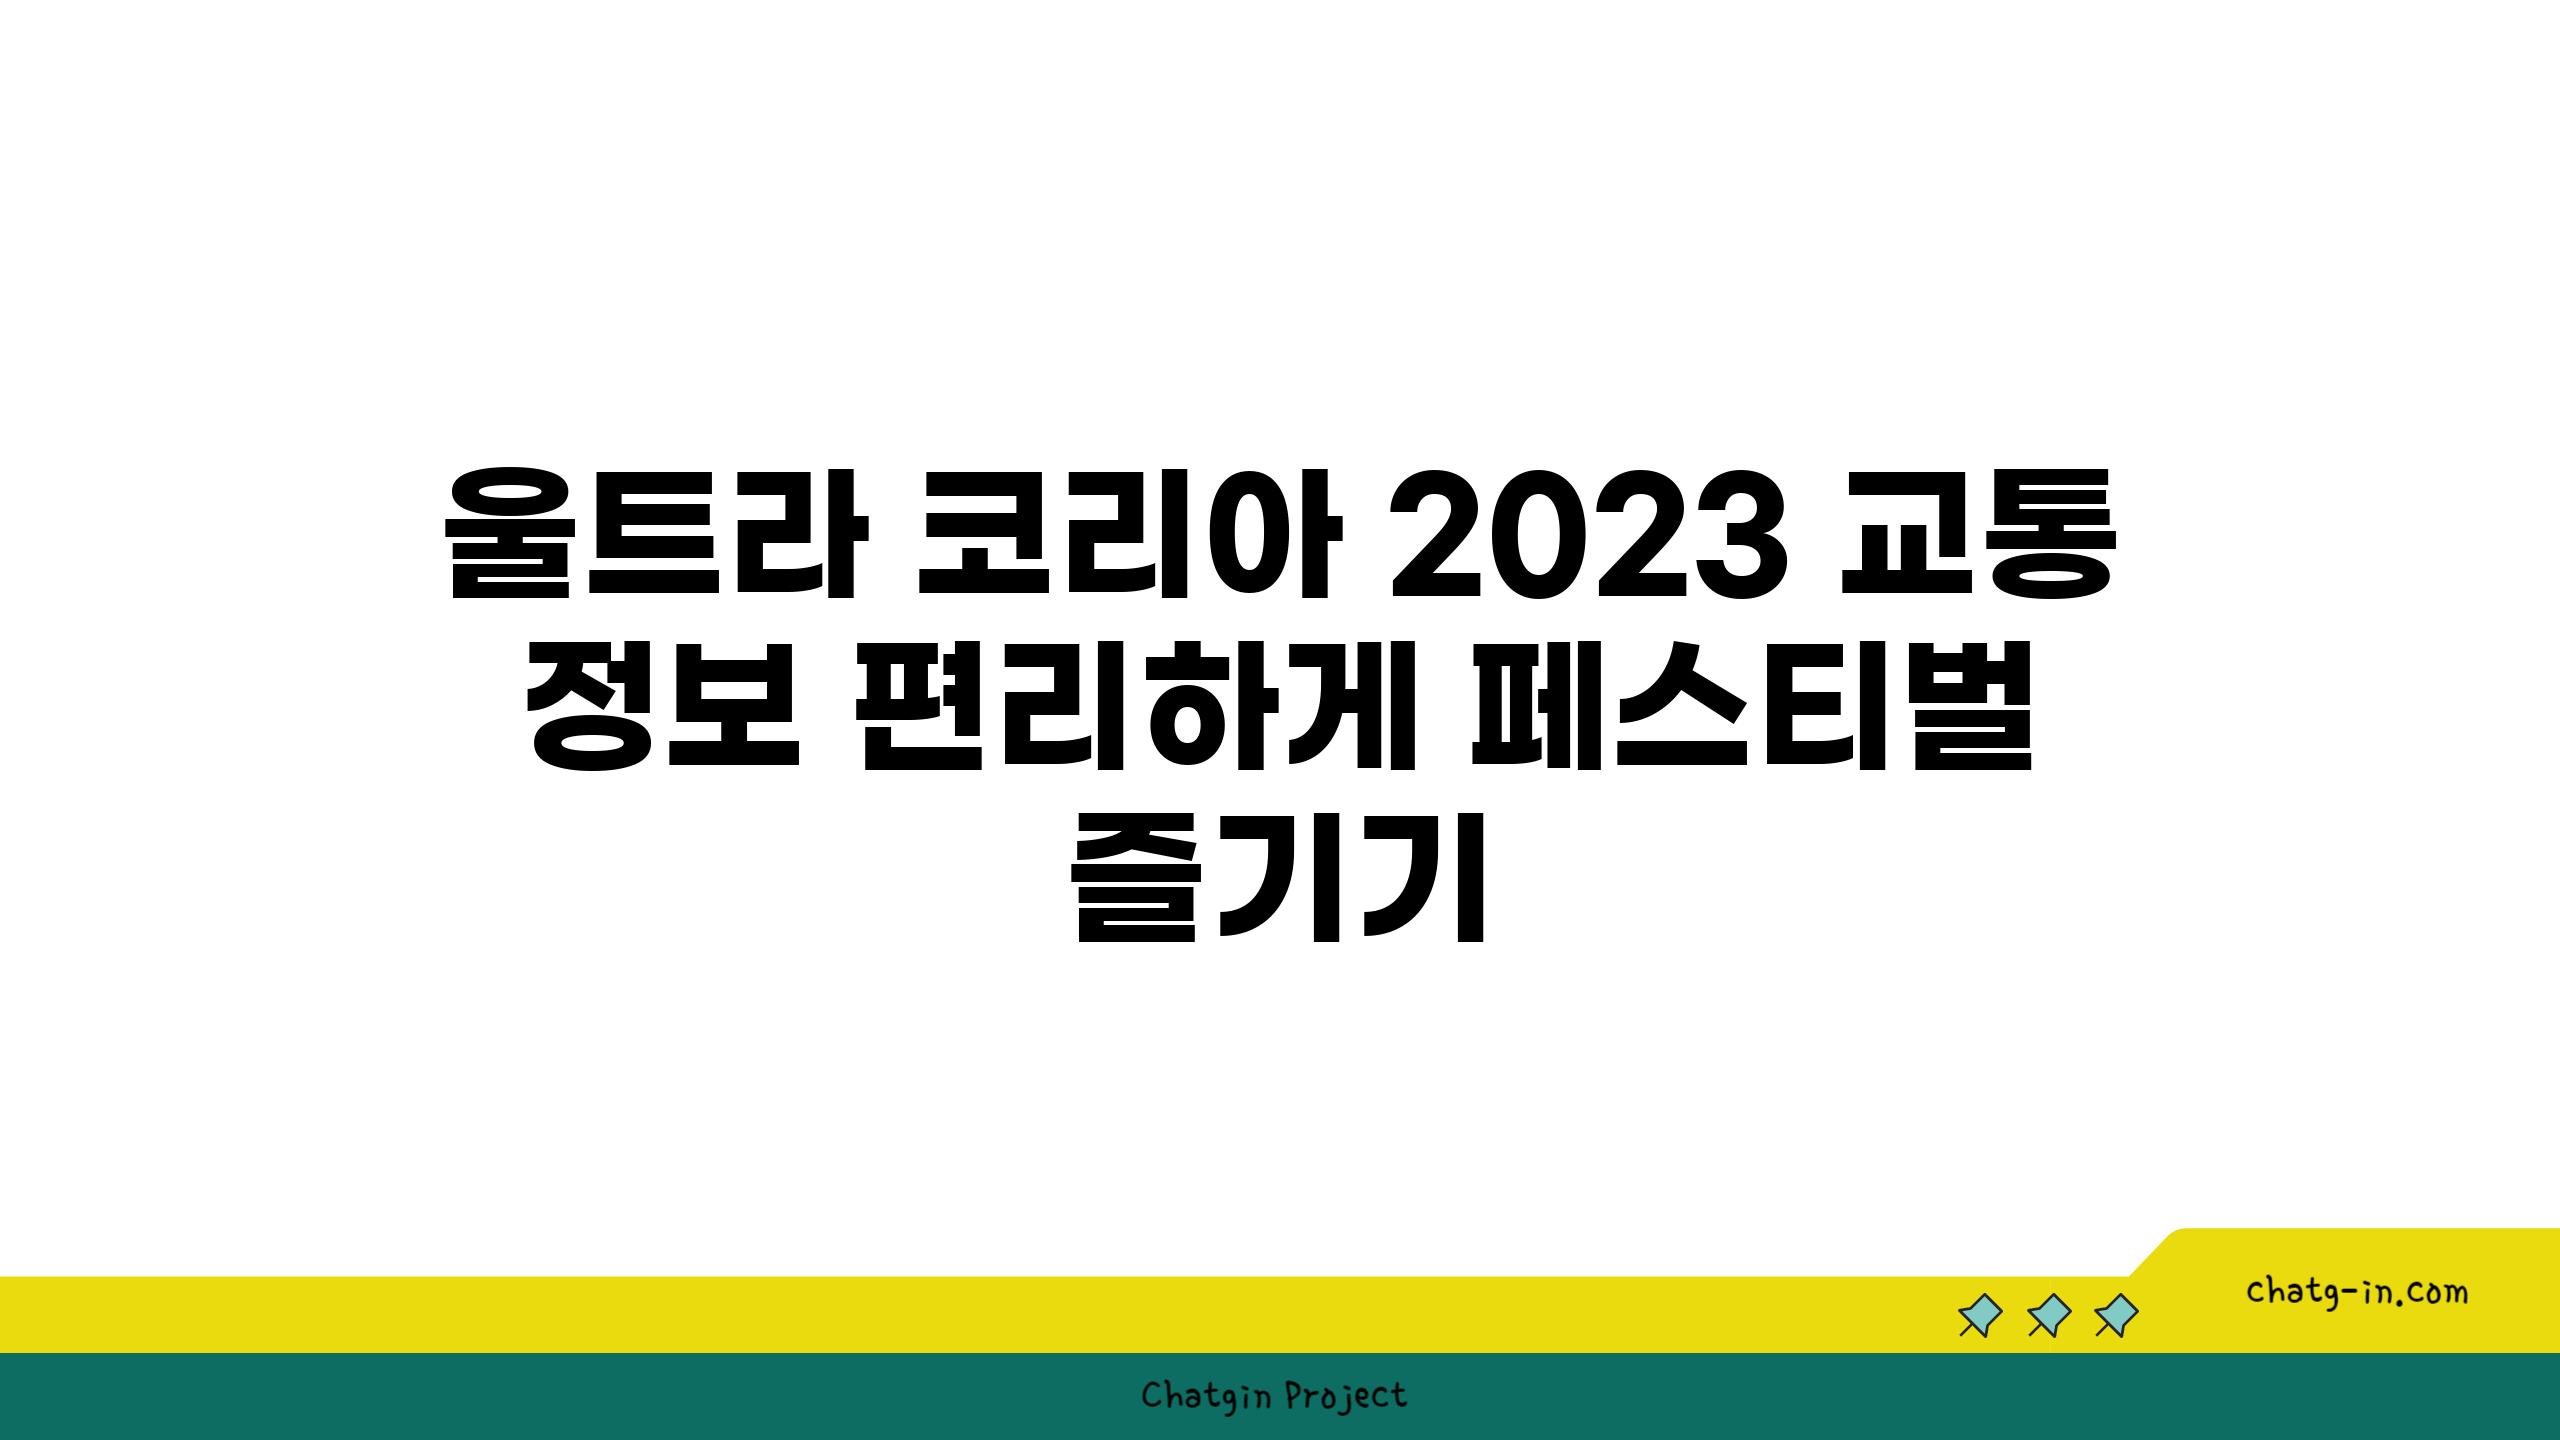 울트라 코리아 2023 교통 정보 편리하게 페스티벌 즐기기